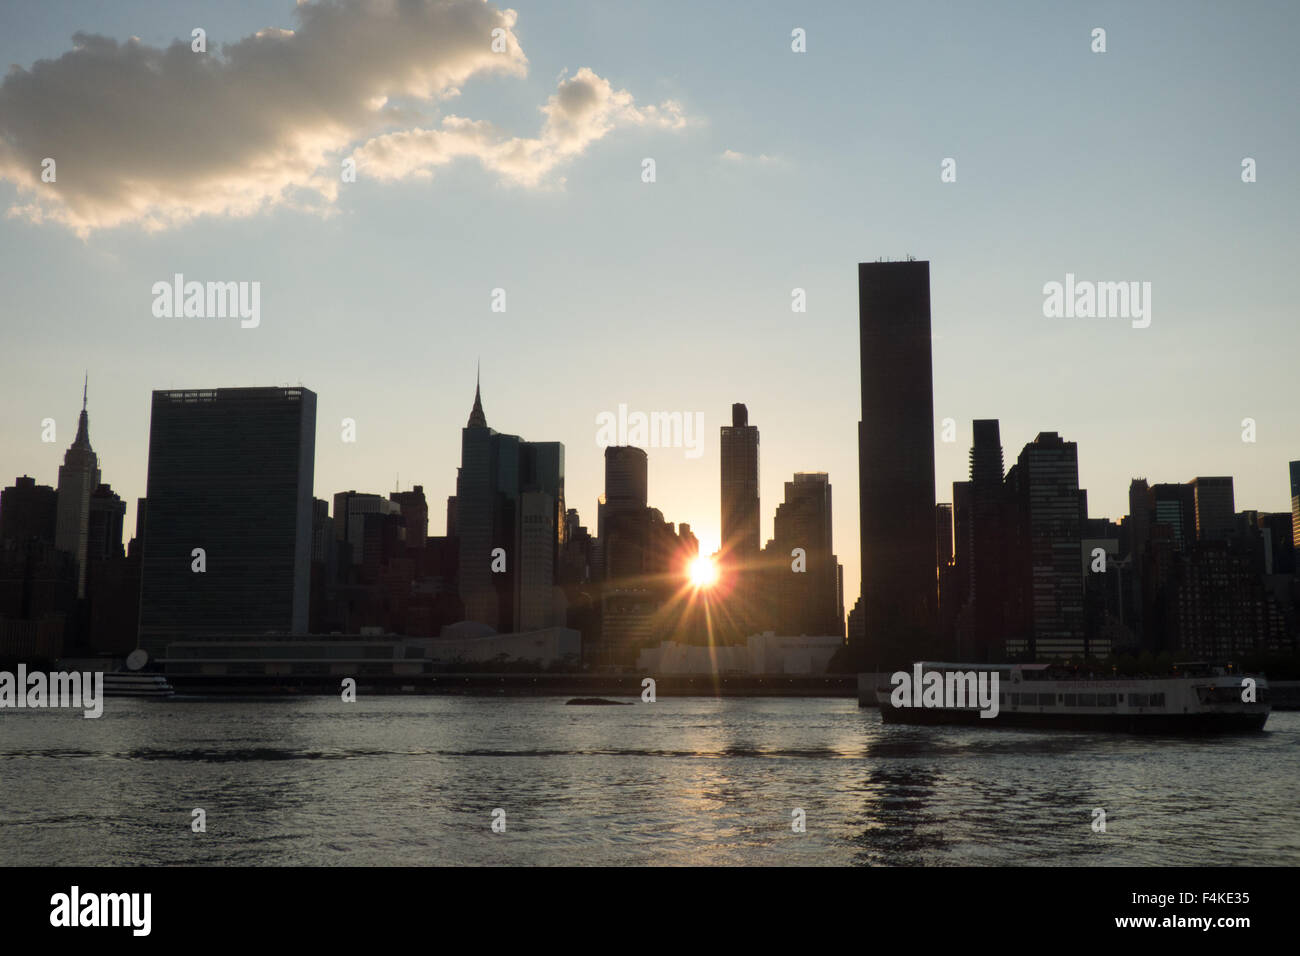 Vue de Long Island City, Queens les toits de la ville de new york au coucher du soleil photo par jen lombardo Banque D'Images